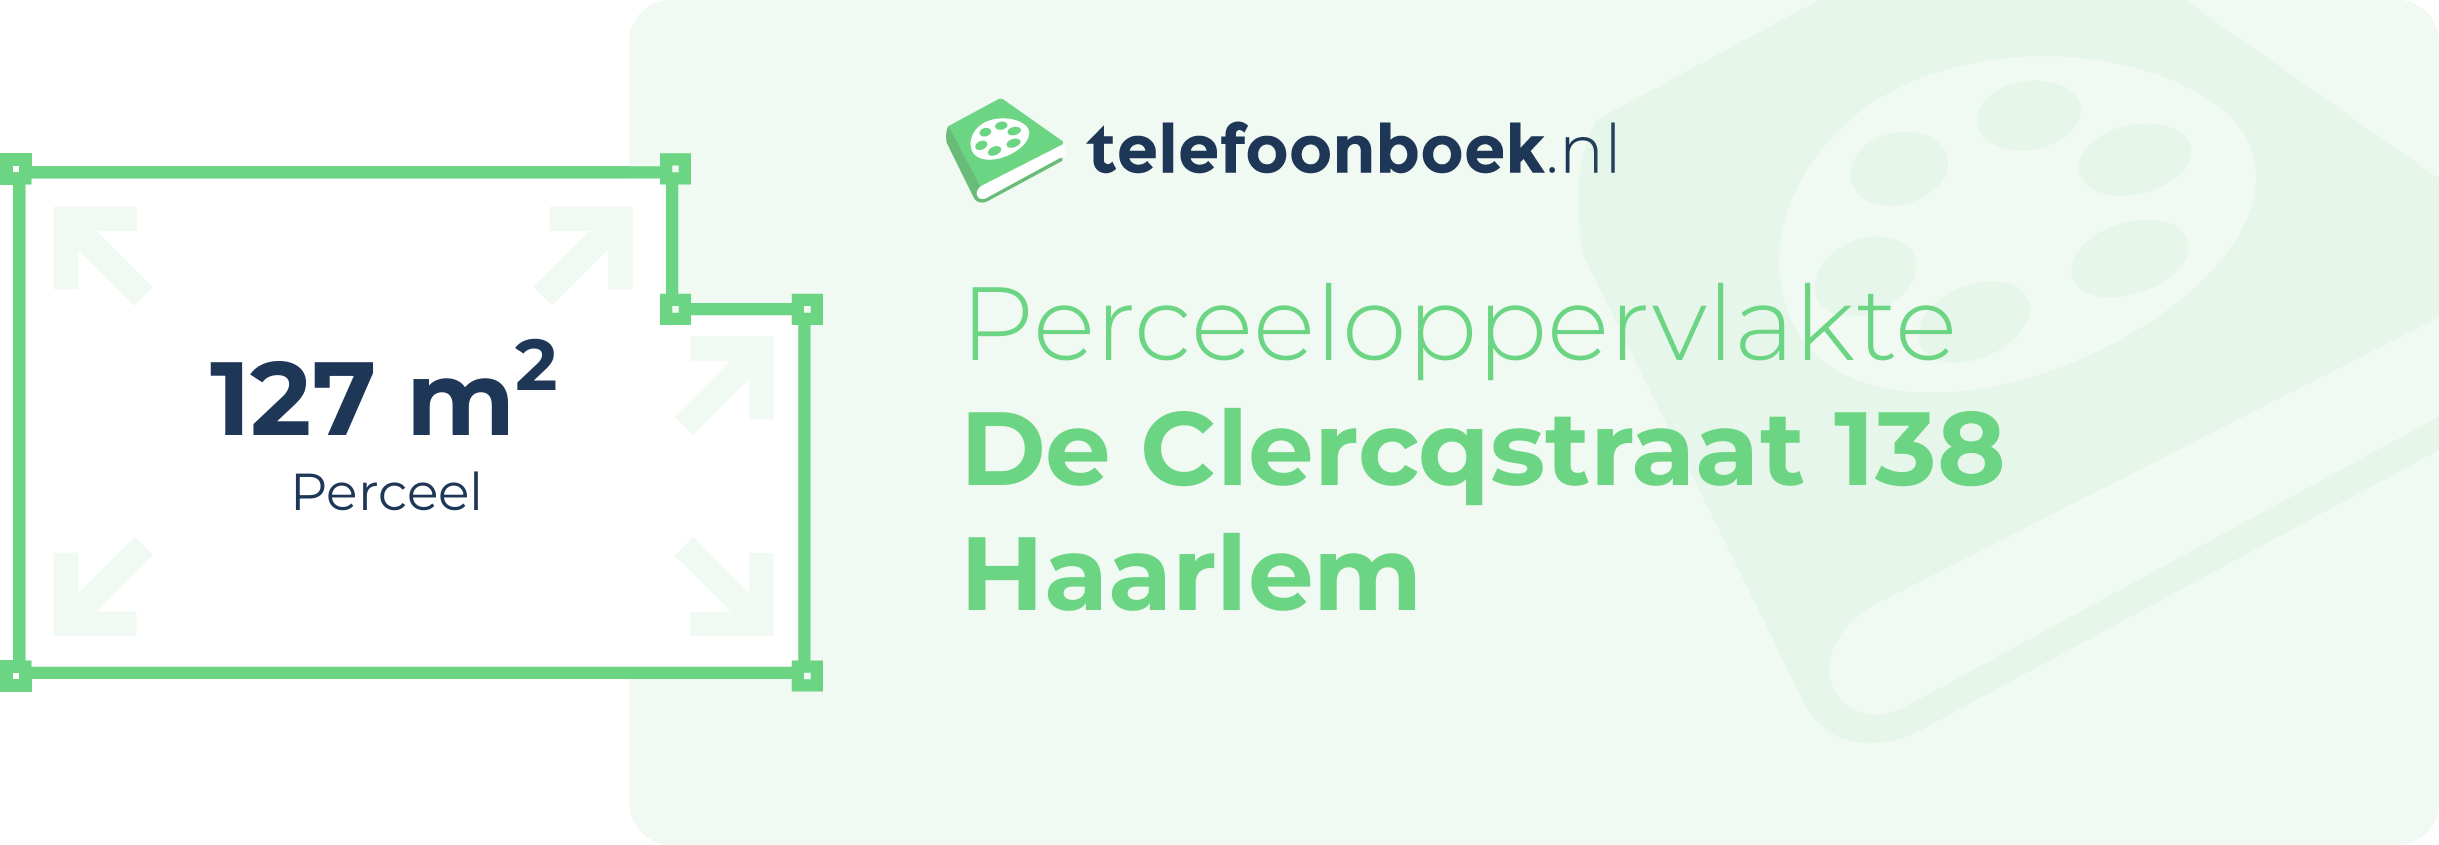 Perceeloppervlakte De Clercqstraat 138 Haarlem